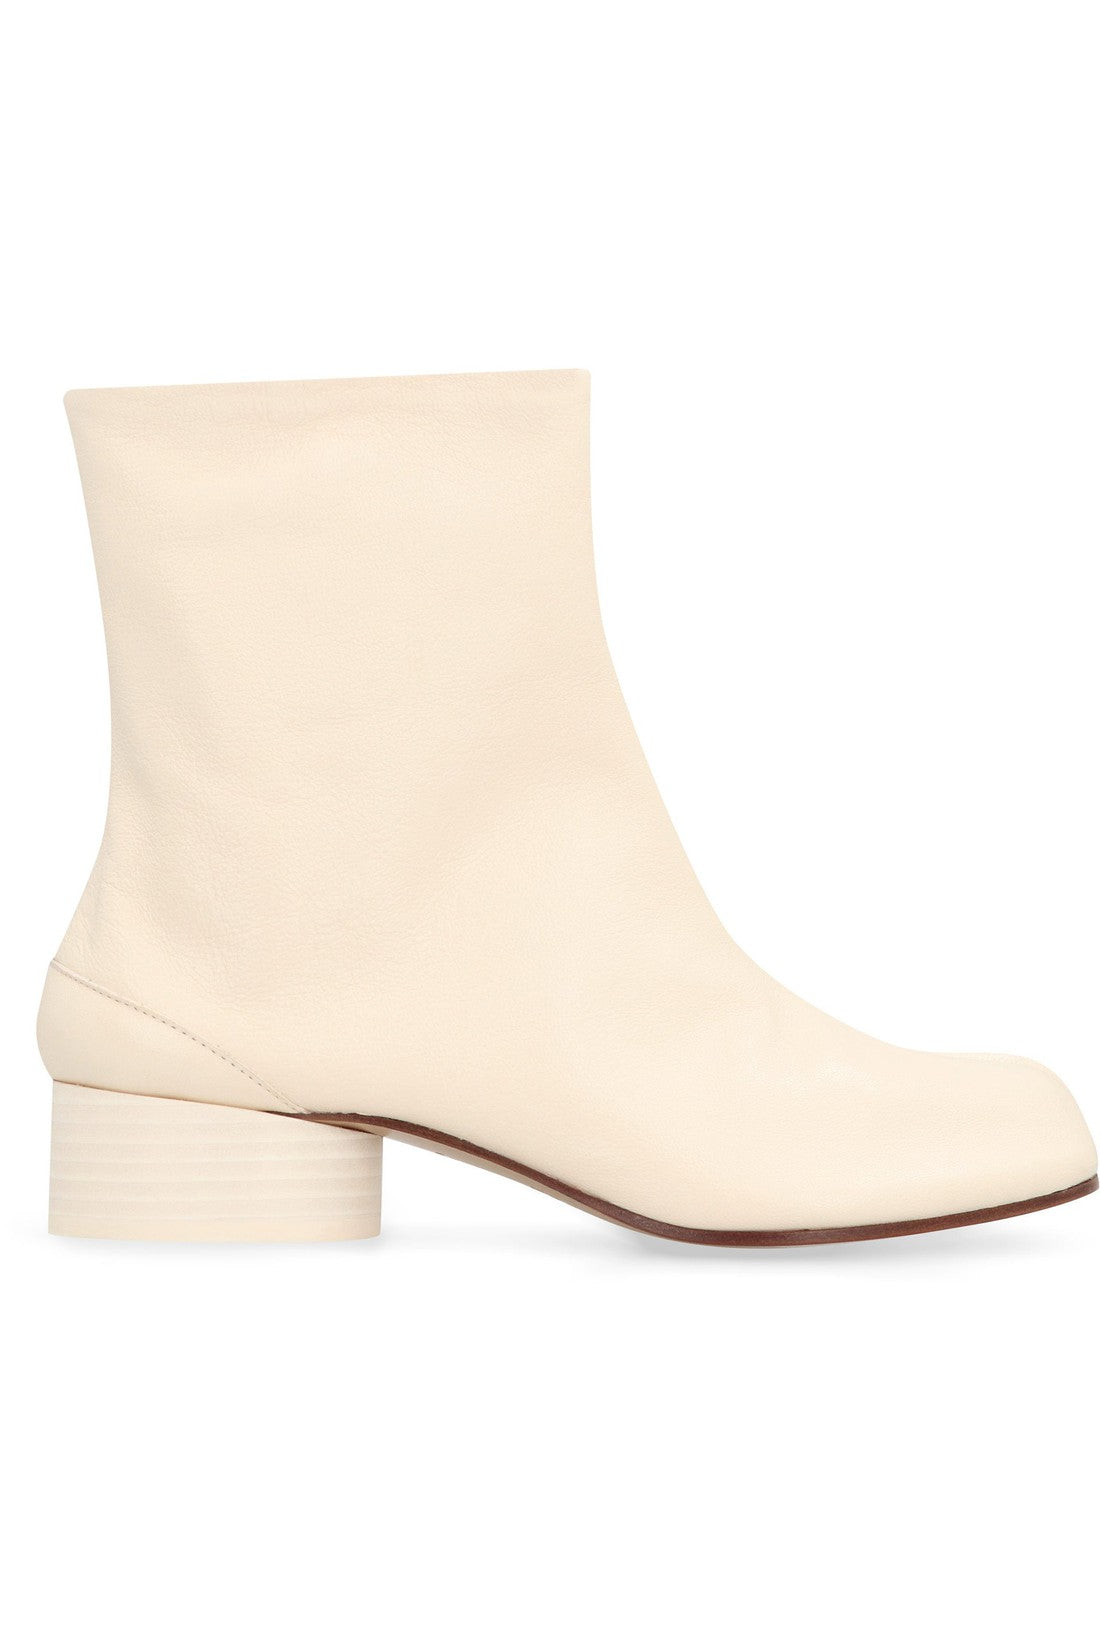 Maison Margiela-OUTLET-SALE-Tabi leather ankle boots-ARCHIVIST